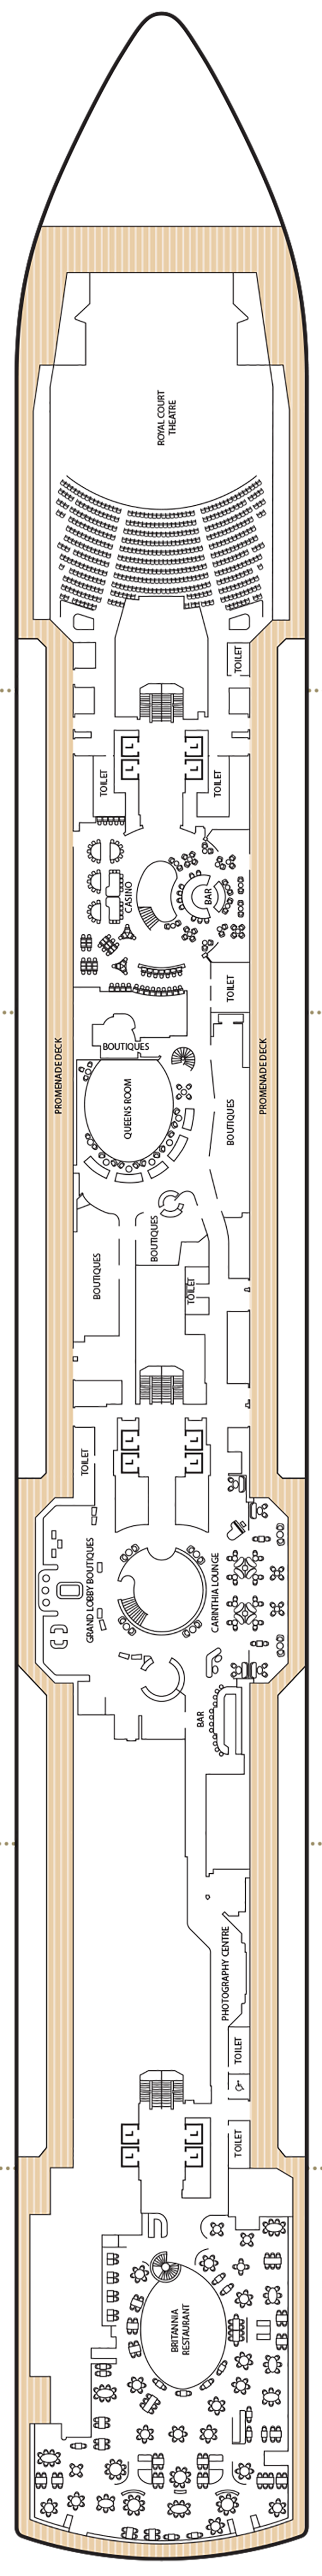 Queen Anne - Decksplan Deck 3